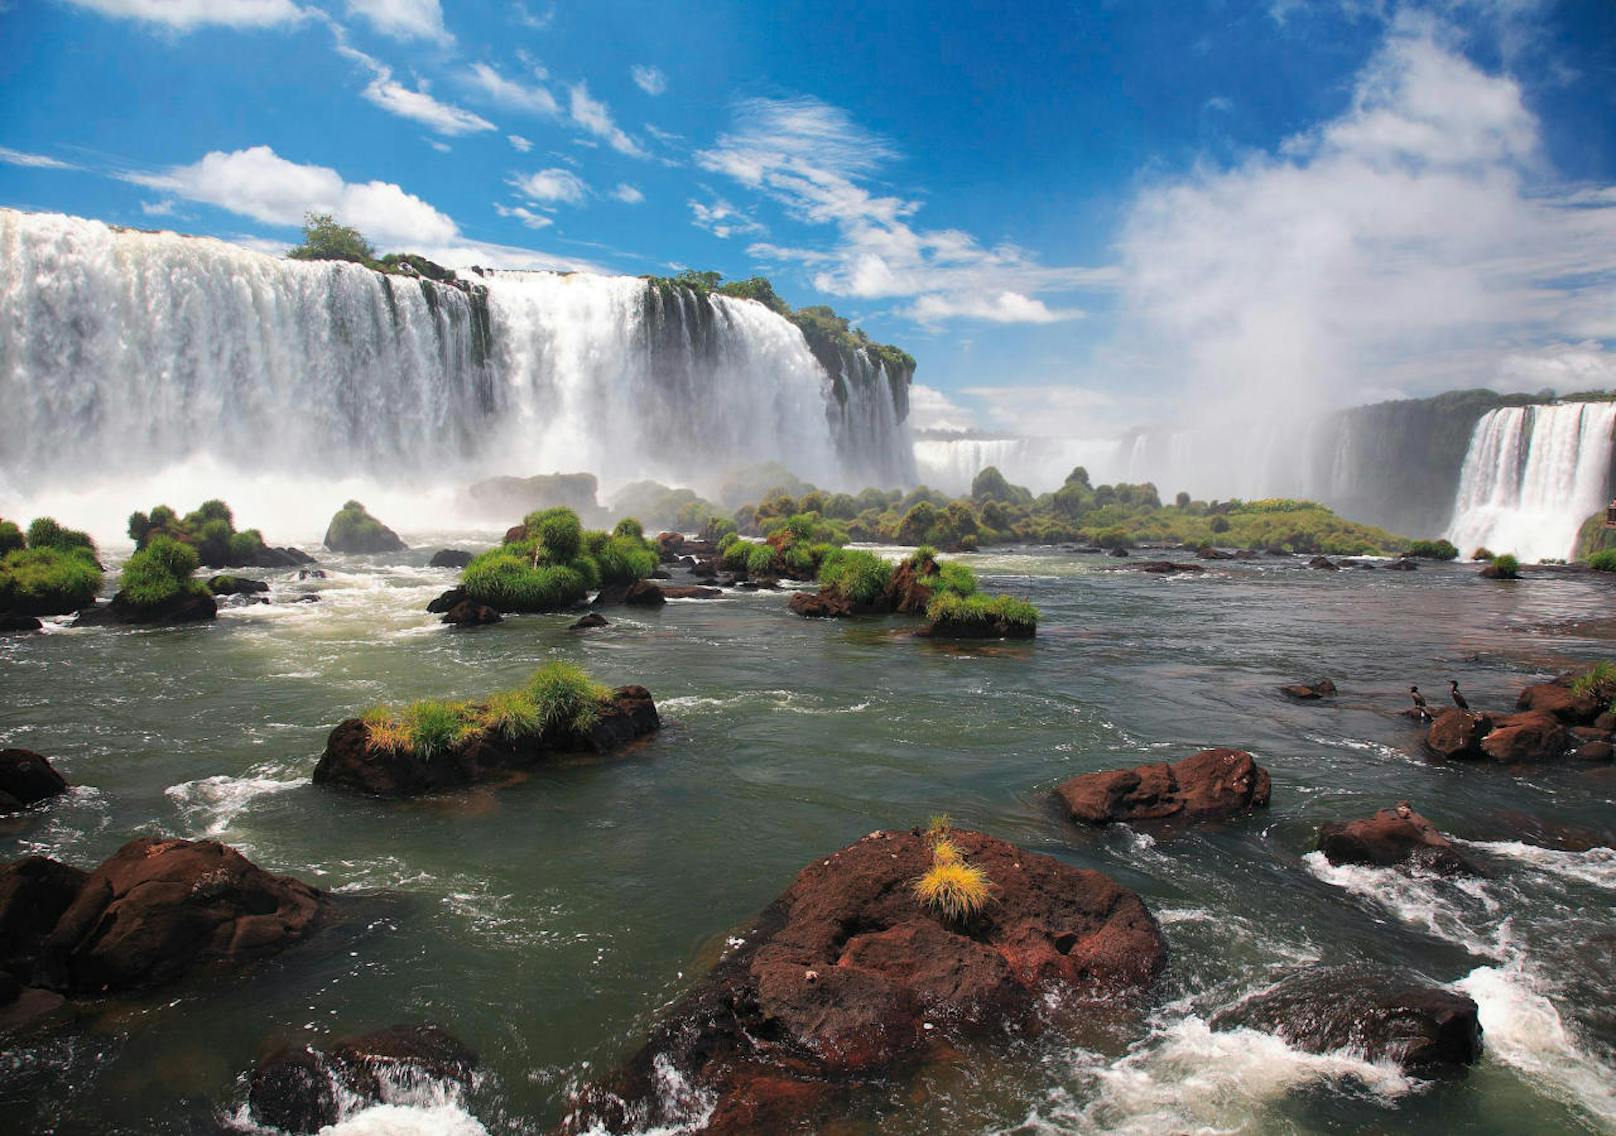 <b>4. Eintauchen in das lustvolle Südamerika</b>

Eine Hochzeitsreise nach Argentinien und Brasilien bedeutet ein Eintauchen in eine andere Welt. Teilen Sie diese Erfahrung, Hand in Hand, mit Ihrem Liebsten. Hier regiert die Vielfalt vom bunten Trubel von Buenos Aires bis zu den spektakulären Iguazú-Wasserfällen und den unzähligen Kanälen des Paraná-Delta, mit ihren hunderten von Inseln und der üppigen Vegetation. Highlights wie die Zahnradbahnfahrt durch den Tijuca Regenwald und Weinverkostungen in Mendoza lassen zwei Herzen höherschlagen. Kulinarisches Highlight für zwei Verliebte: Man teilt gemeinsam ein Asado ? jene herrliche Grillmahlzeit, für die das Land berühmt ist. Und wer danach noch fit ist, kombiniert Argentinien mit einem Trip nach Rio de Janeiro und genießt dort Zuckerhut und Samba in einem fulminanten Finale.